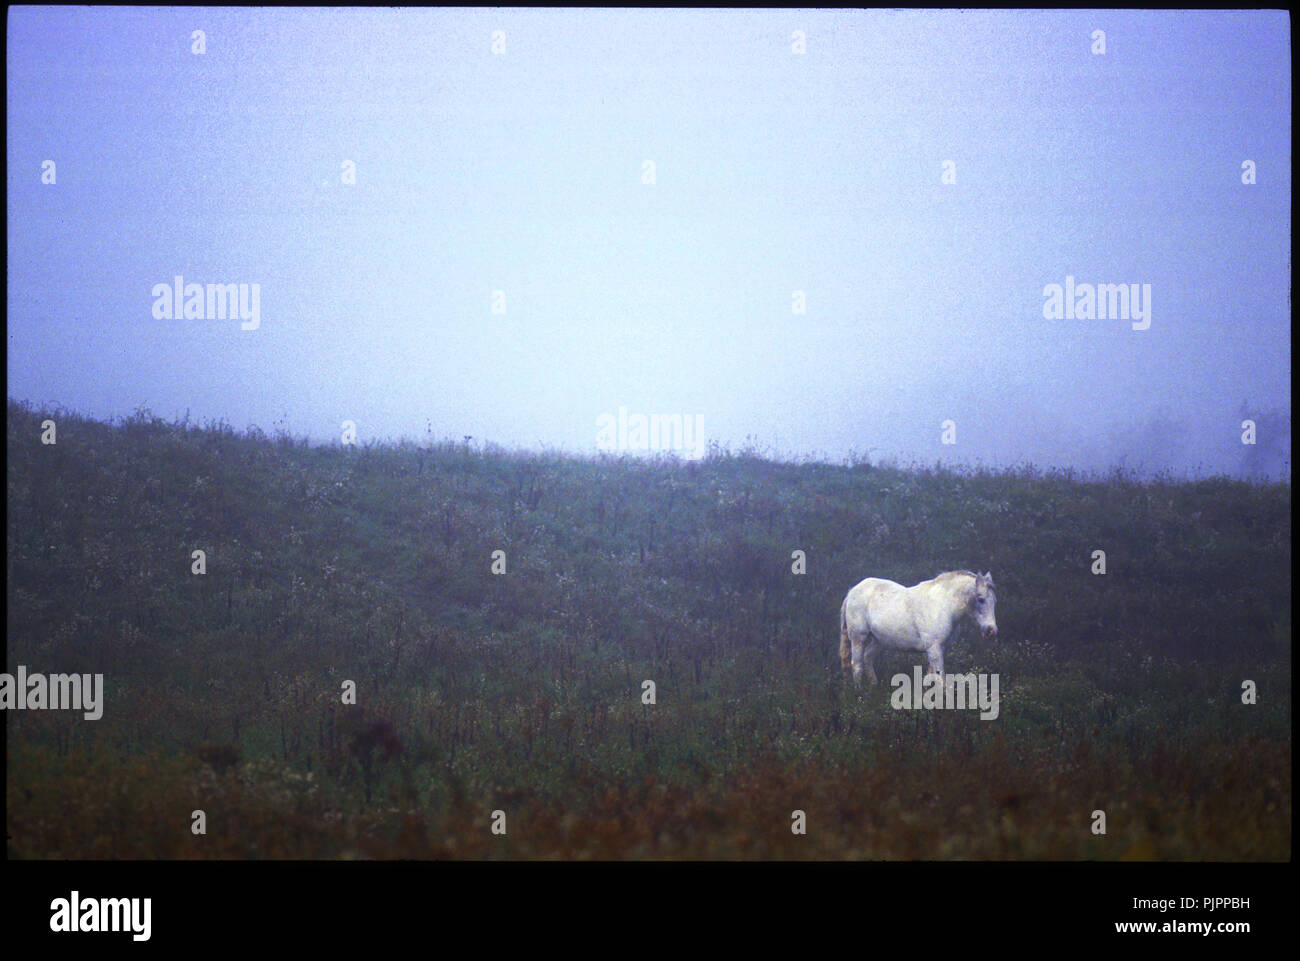 White horse in fog Stock Photo